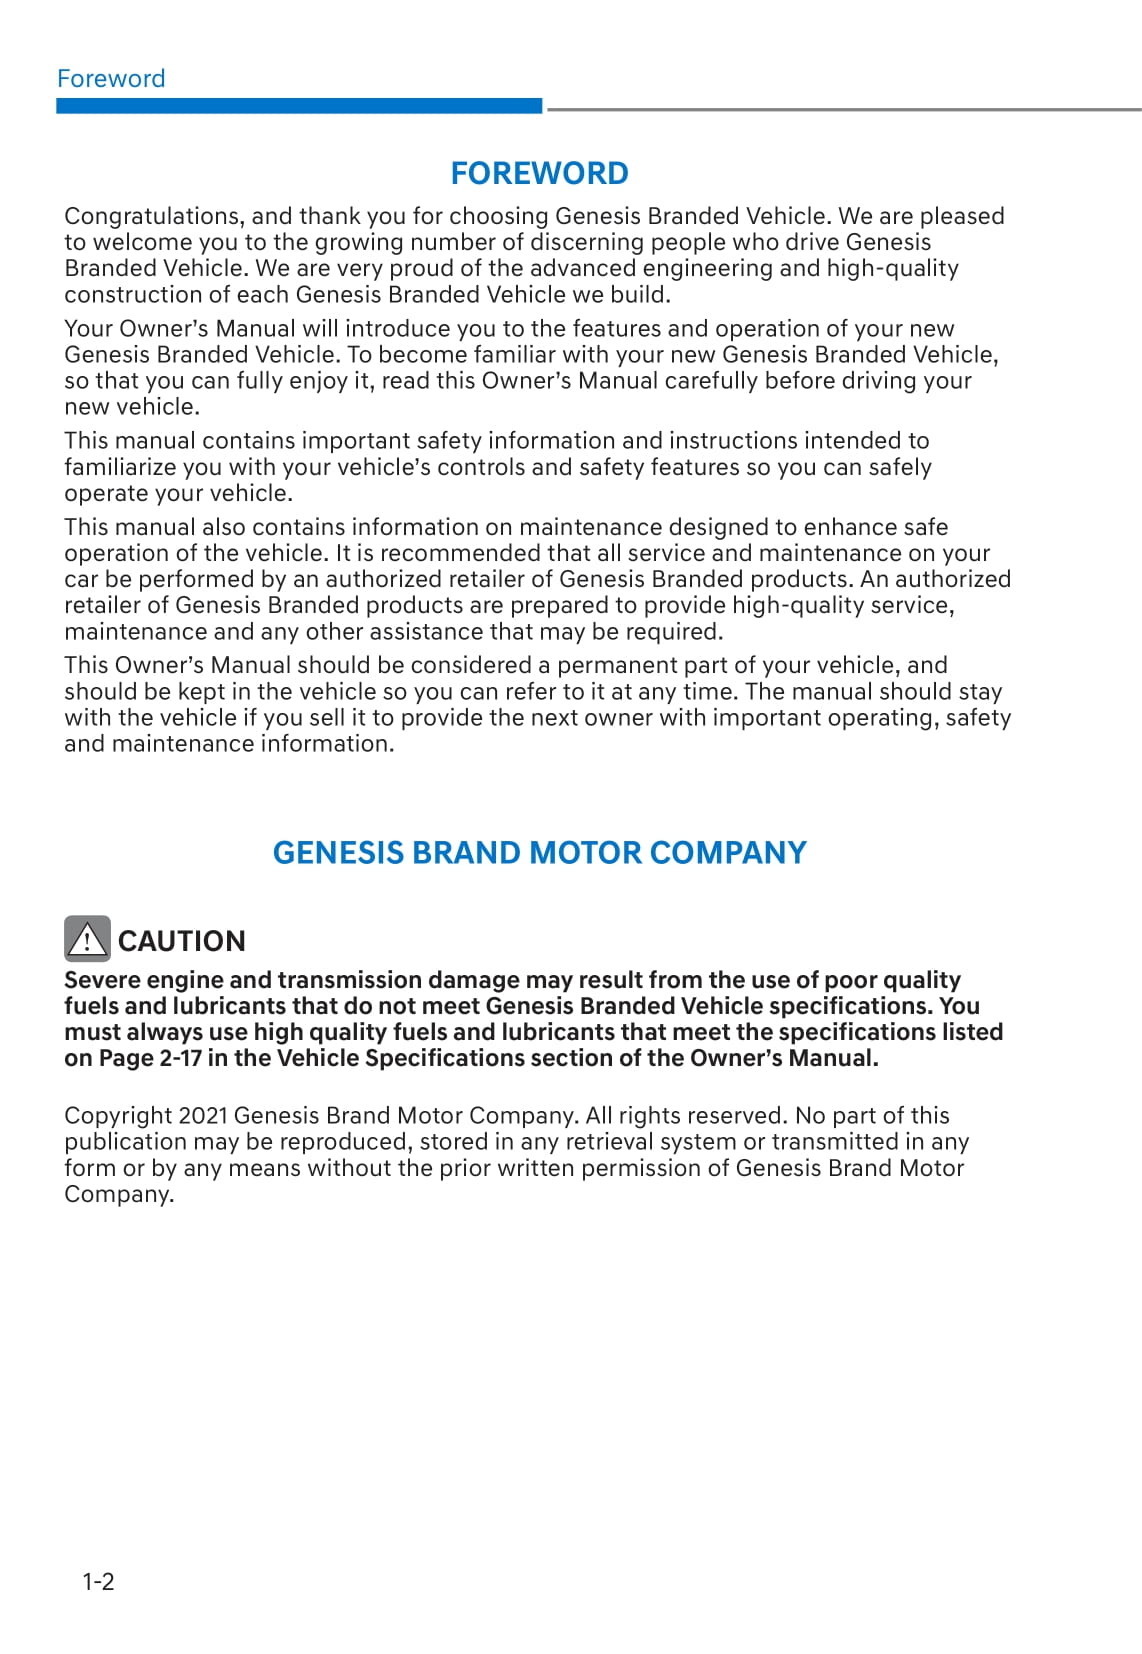 2021 Genesis G70 Owner's Manual | English